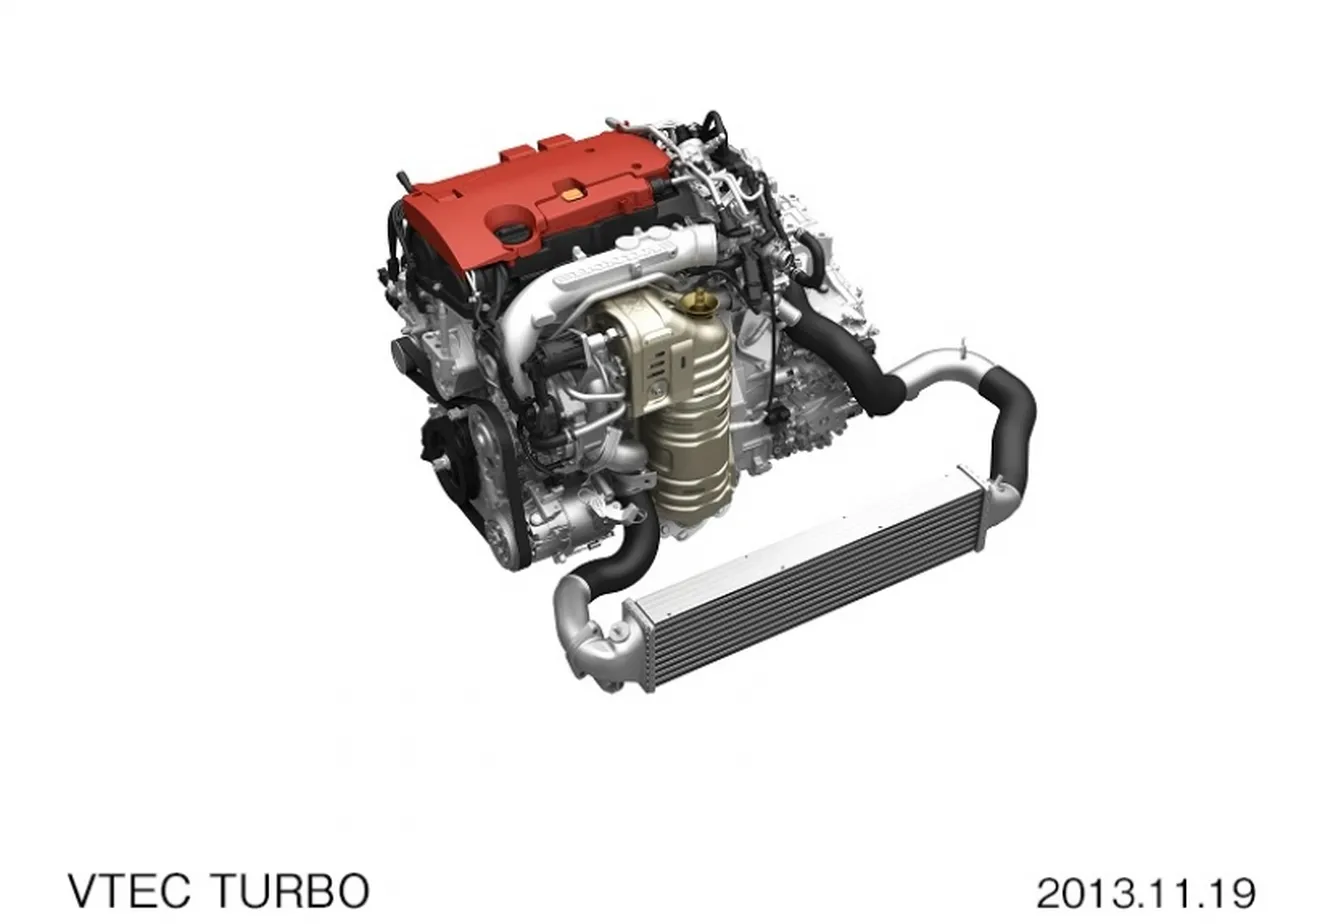 Honda anuncia sus nuevos motores VTEC Turbo